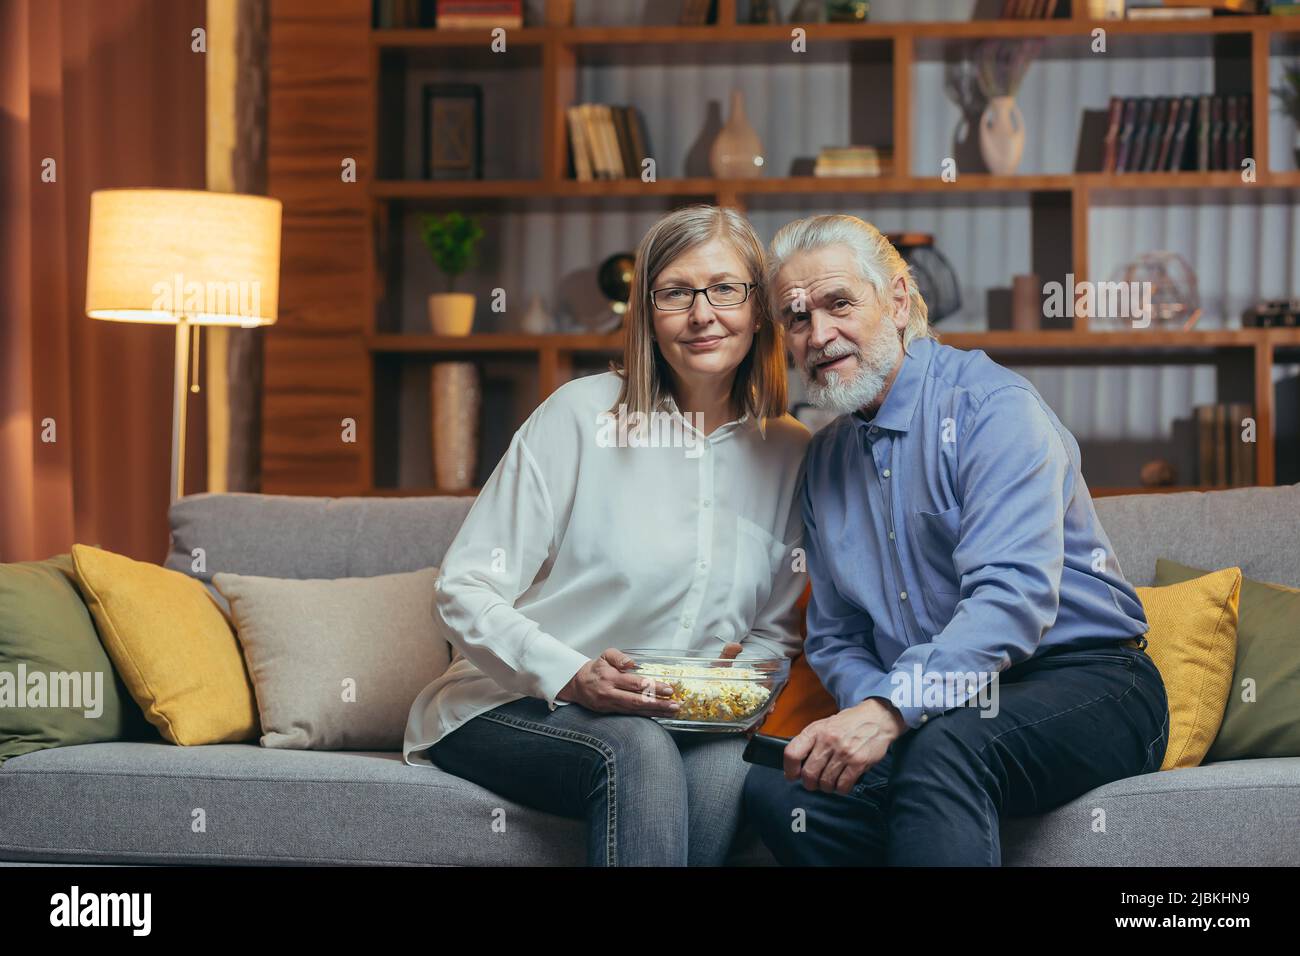 Seniorehepaar, grauhaariger Mann und Frau, sitzen zu Hause und sehen fern, essen abends Popcorn, schauen auf die Kamera und lächeln Stockfoto